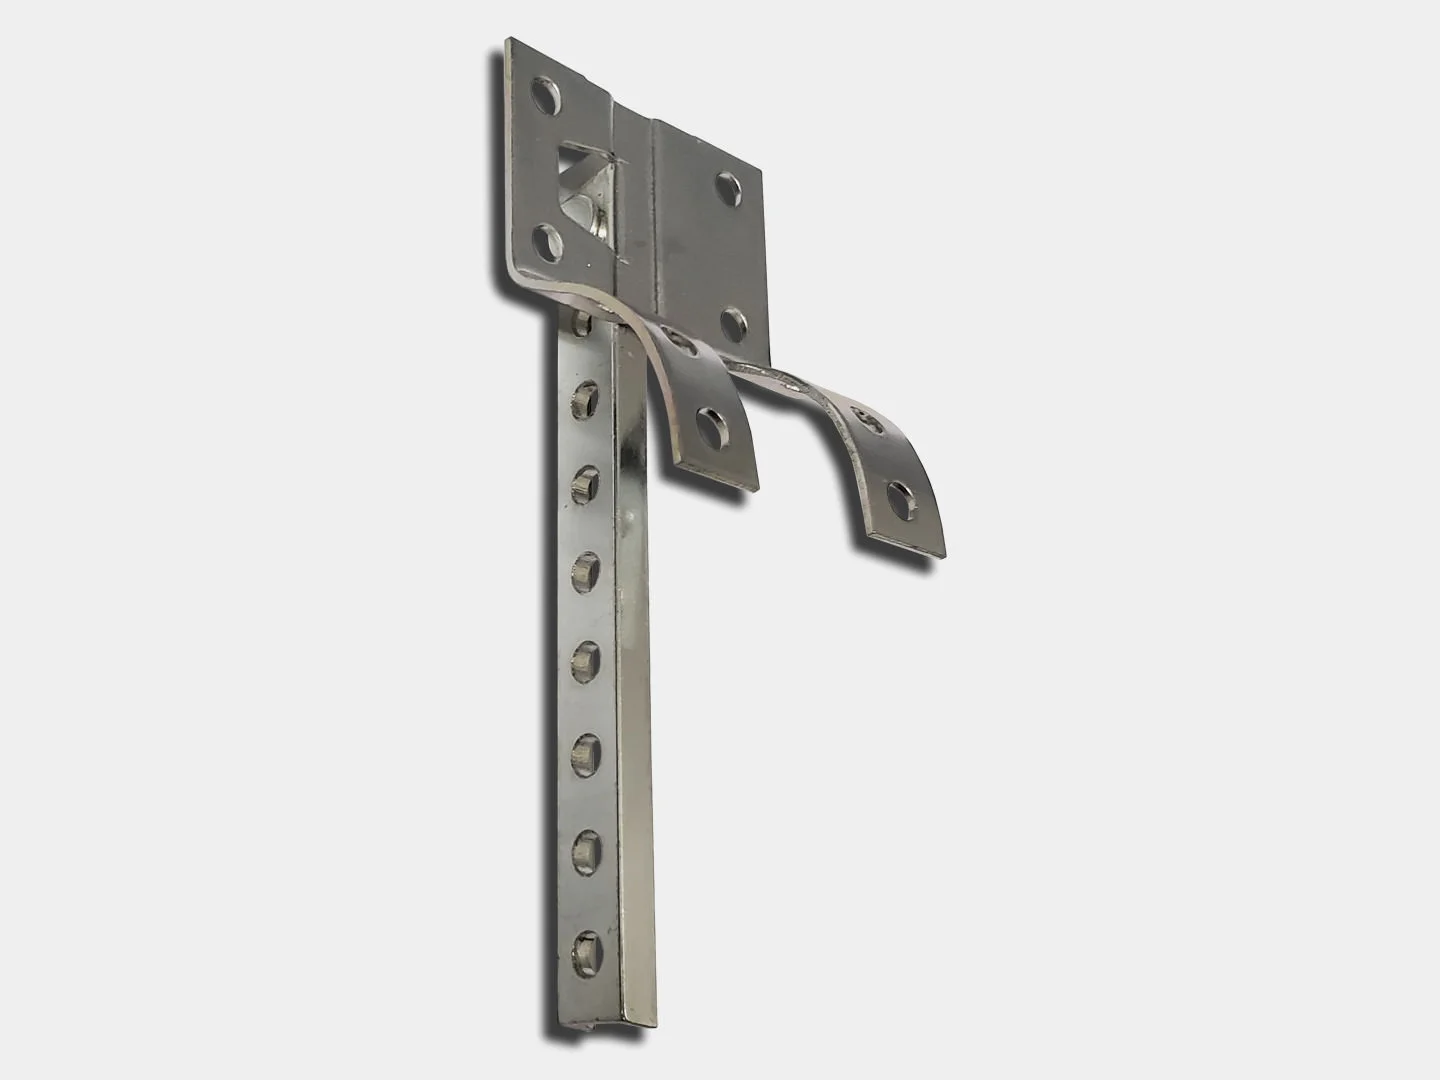 Crown molding shank #6 for gutter hanger - galvanized steel